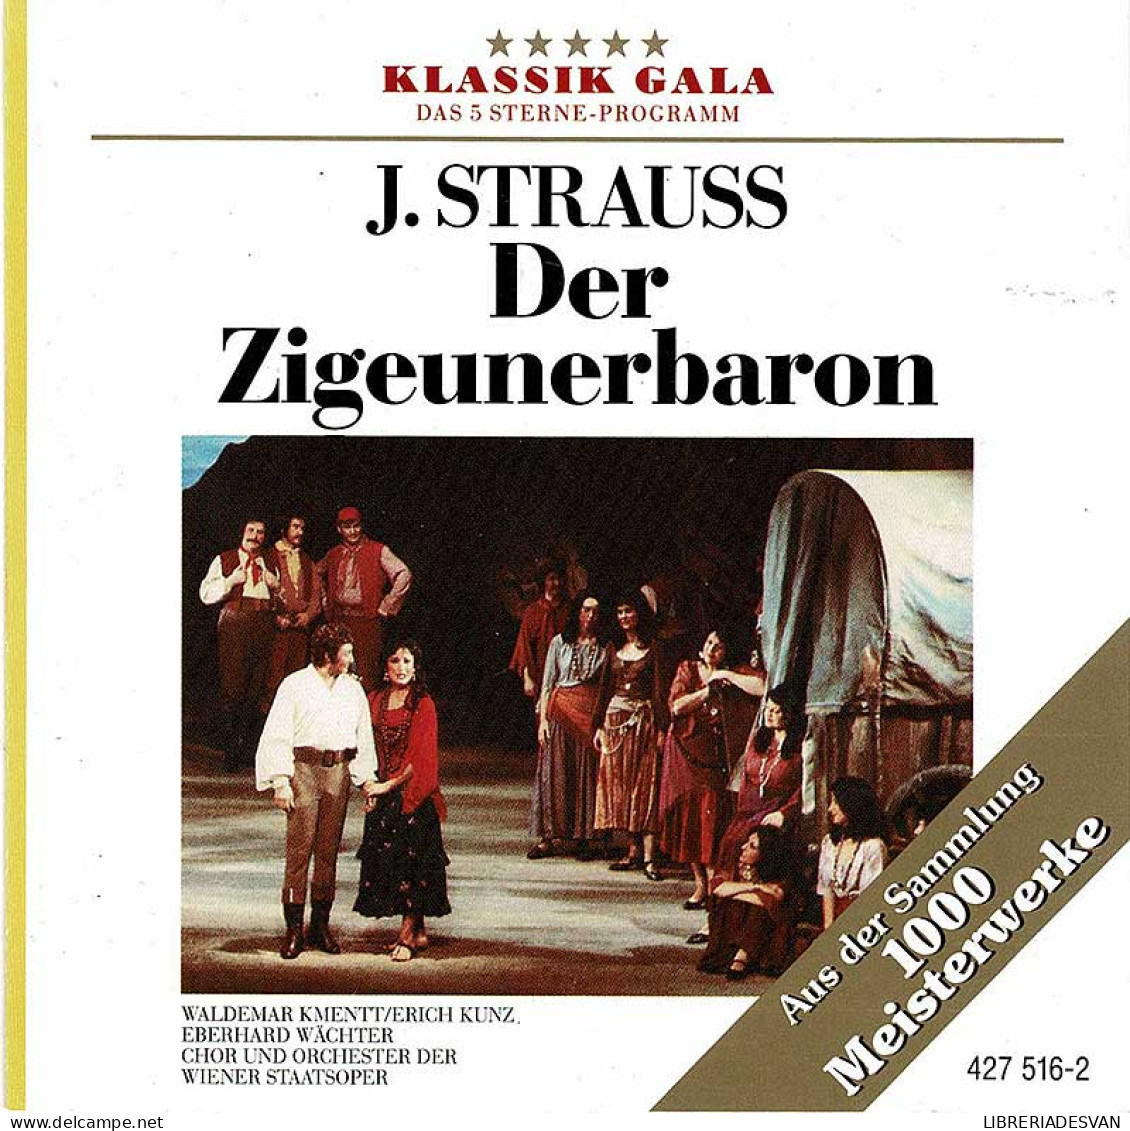 J. Strauss - Der Zigeunerbaron. CD - Classical